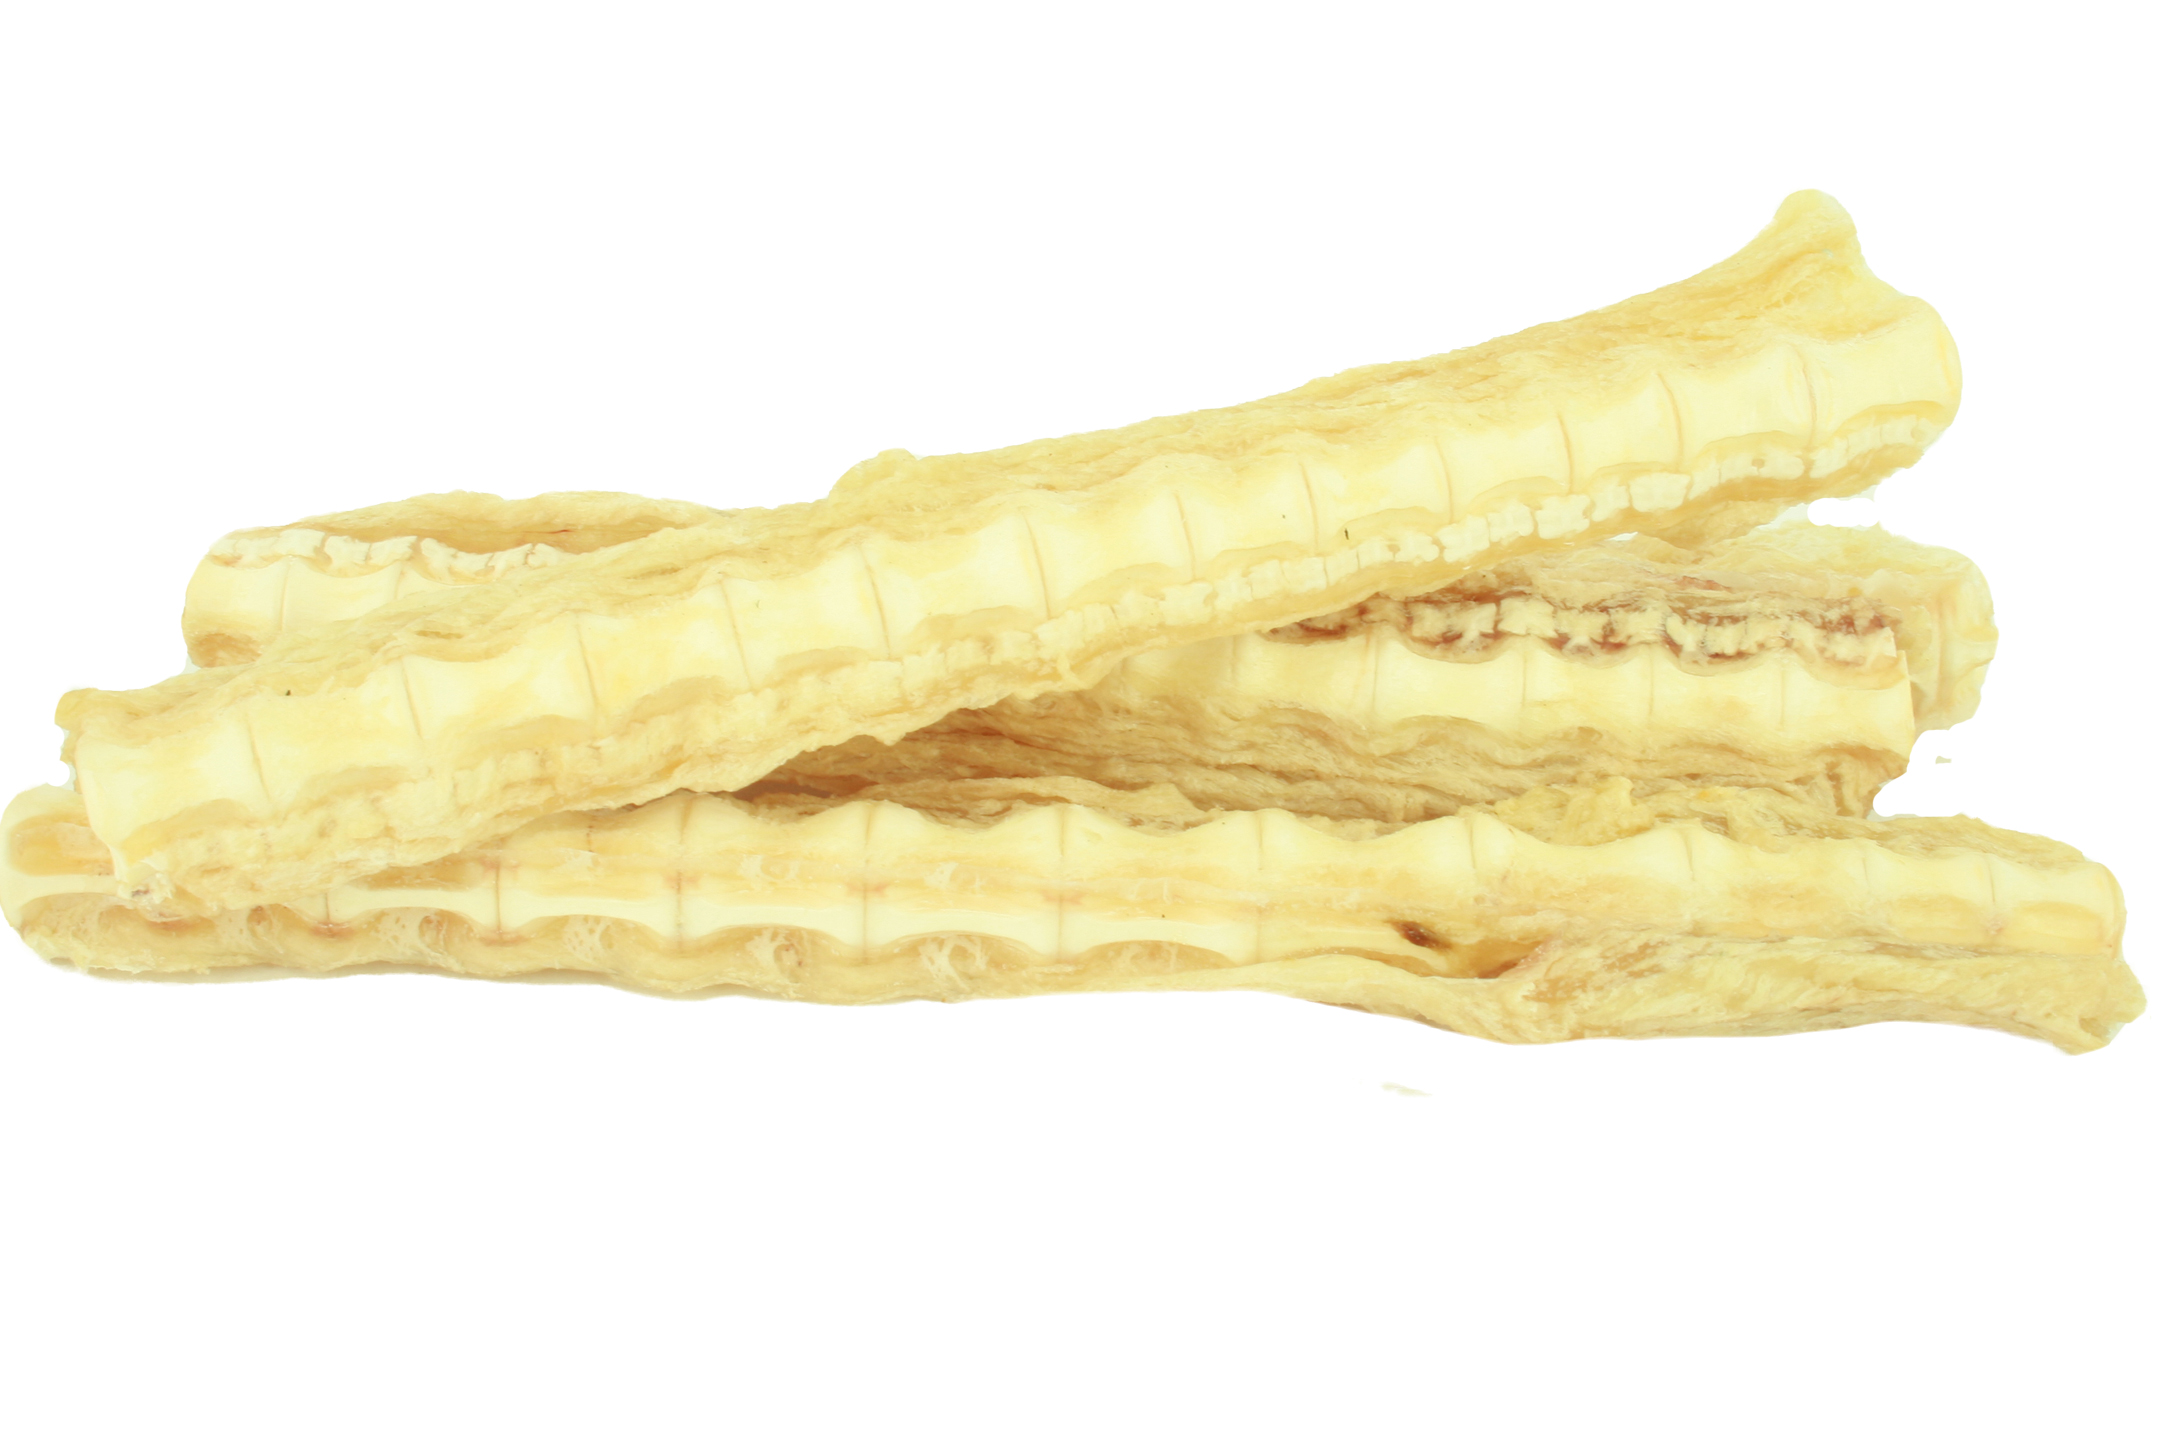 派脆 澳洲珍味鯊魚軟骨1kg
Shark Cartilage 1kg